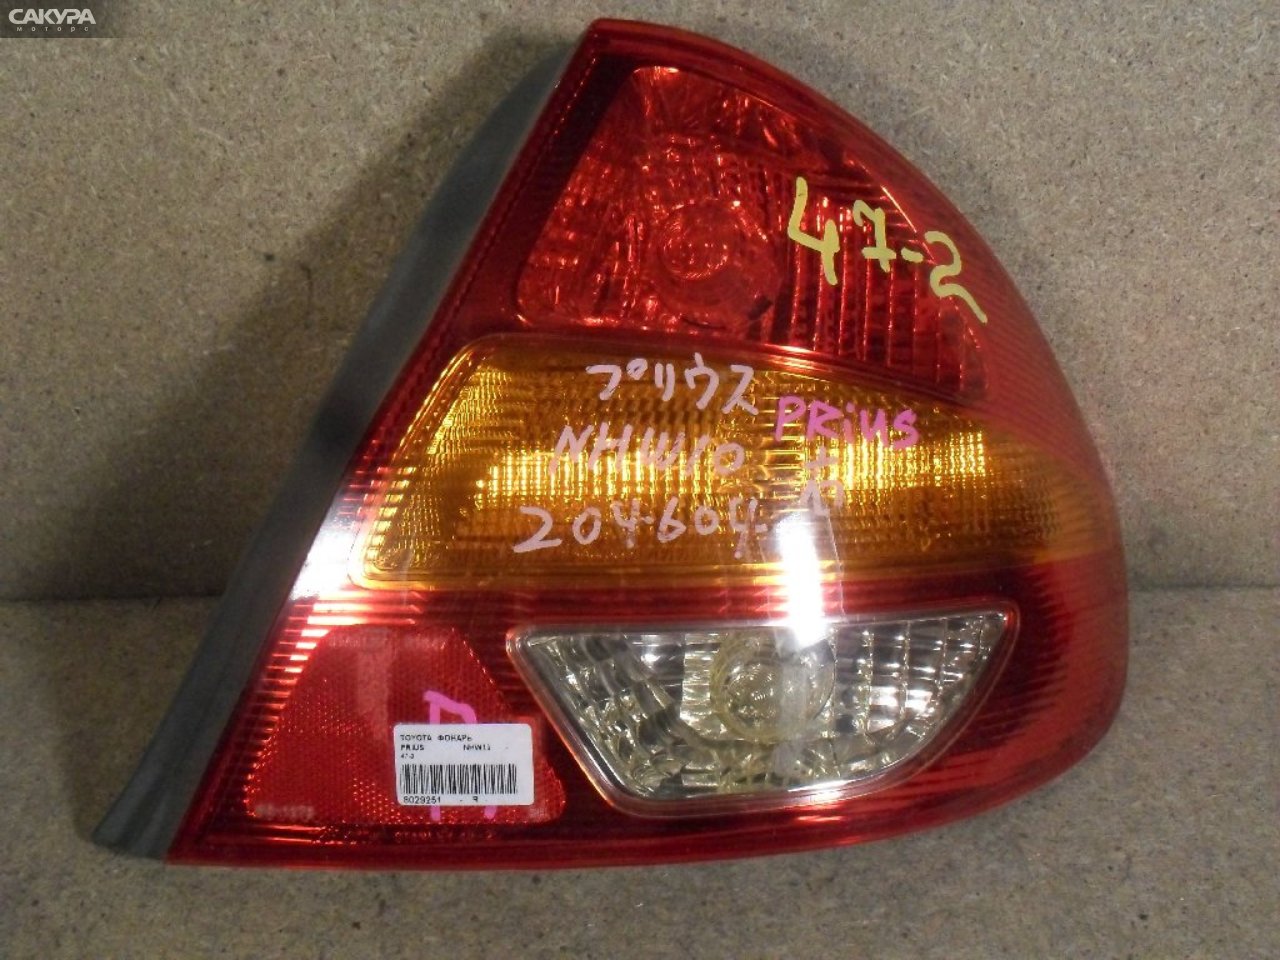 Фонарь стоп-сигнала правый Toyota Prius NHW10 47-2: купить в Сакура Абакан.